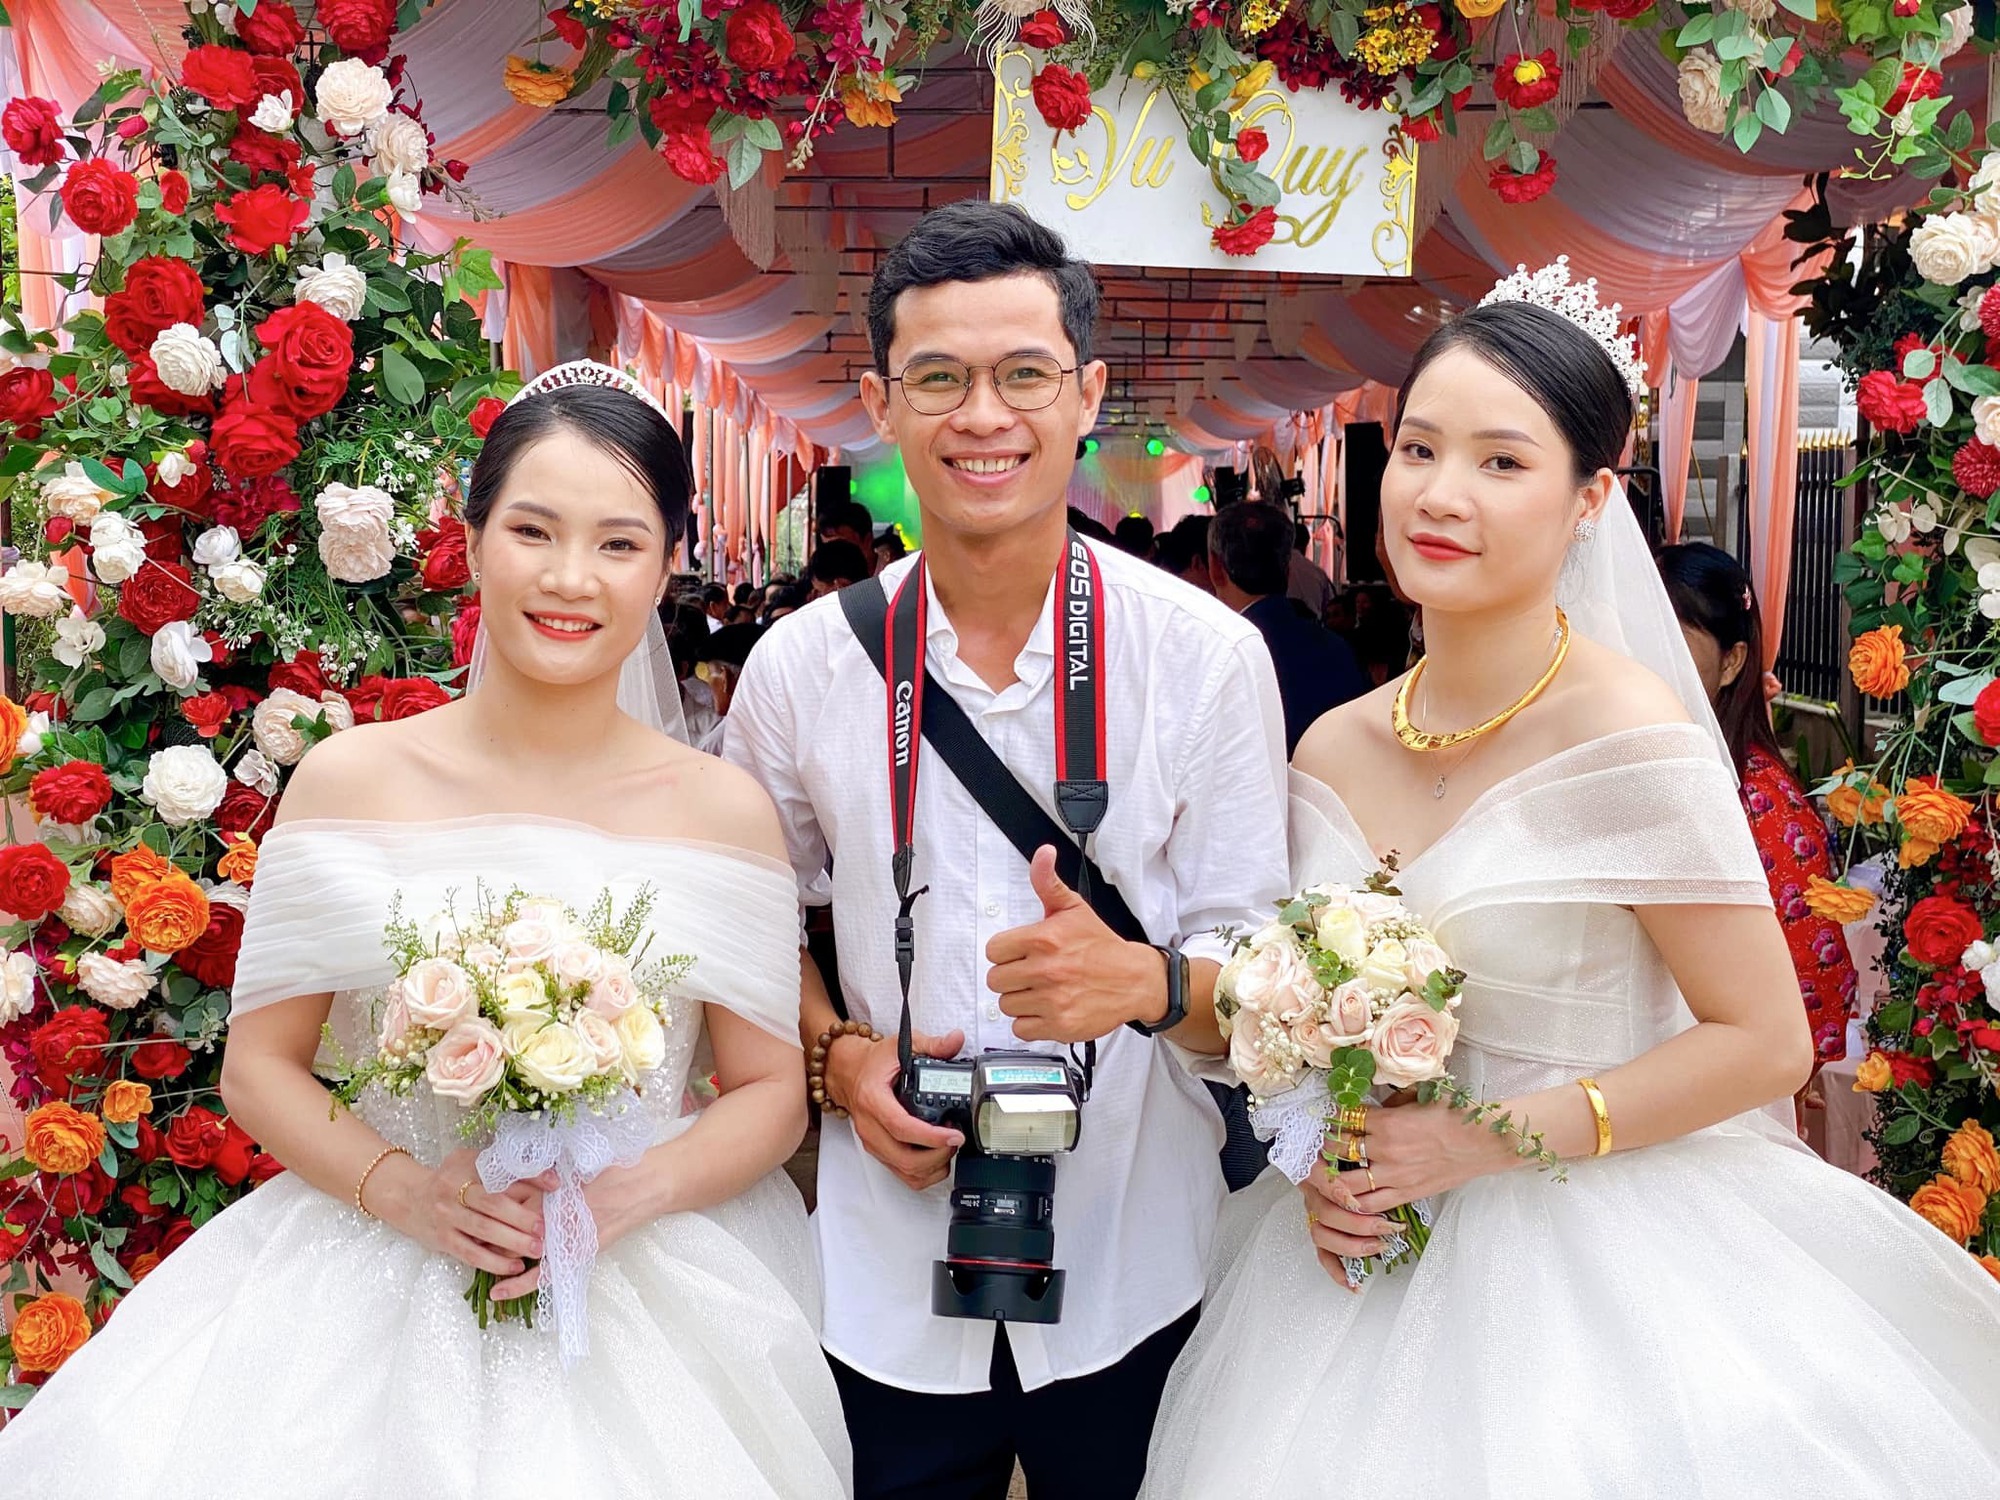 Chị em song sinh lên ‘xe hoa’ cùng ngày ở Quảng Nam: 'Chuẩn bị đồ cưới lộn xộn nhưng may mắn thành công tốt đẹp!' - Ảnh 1.